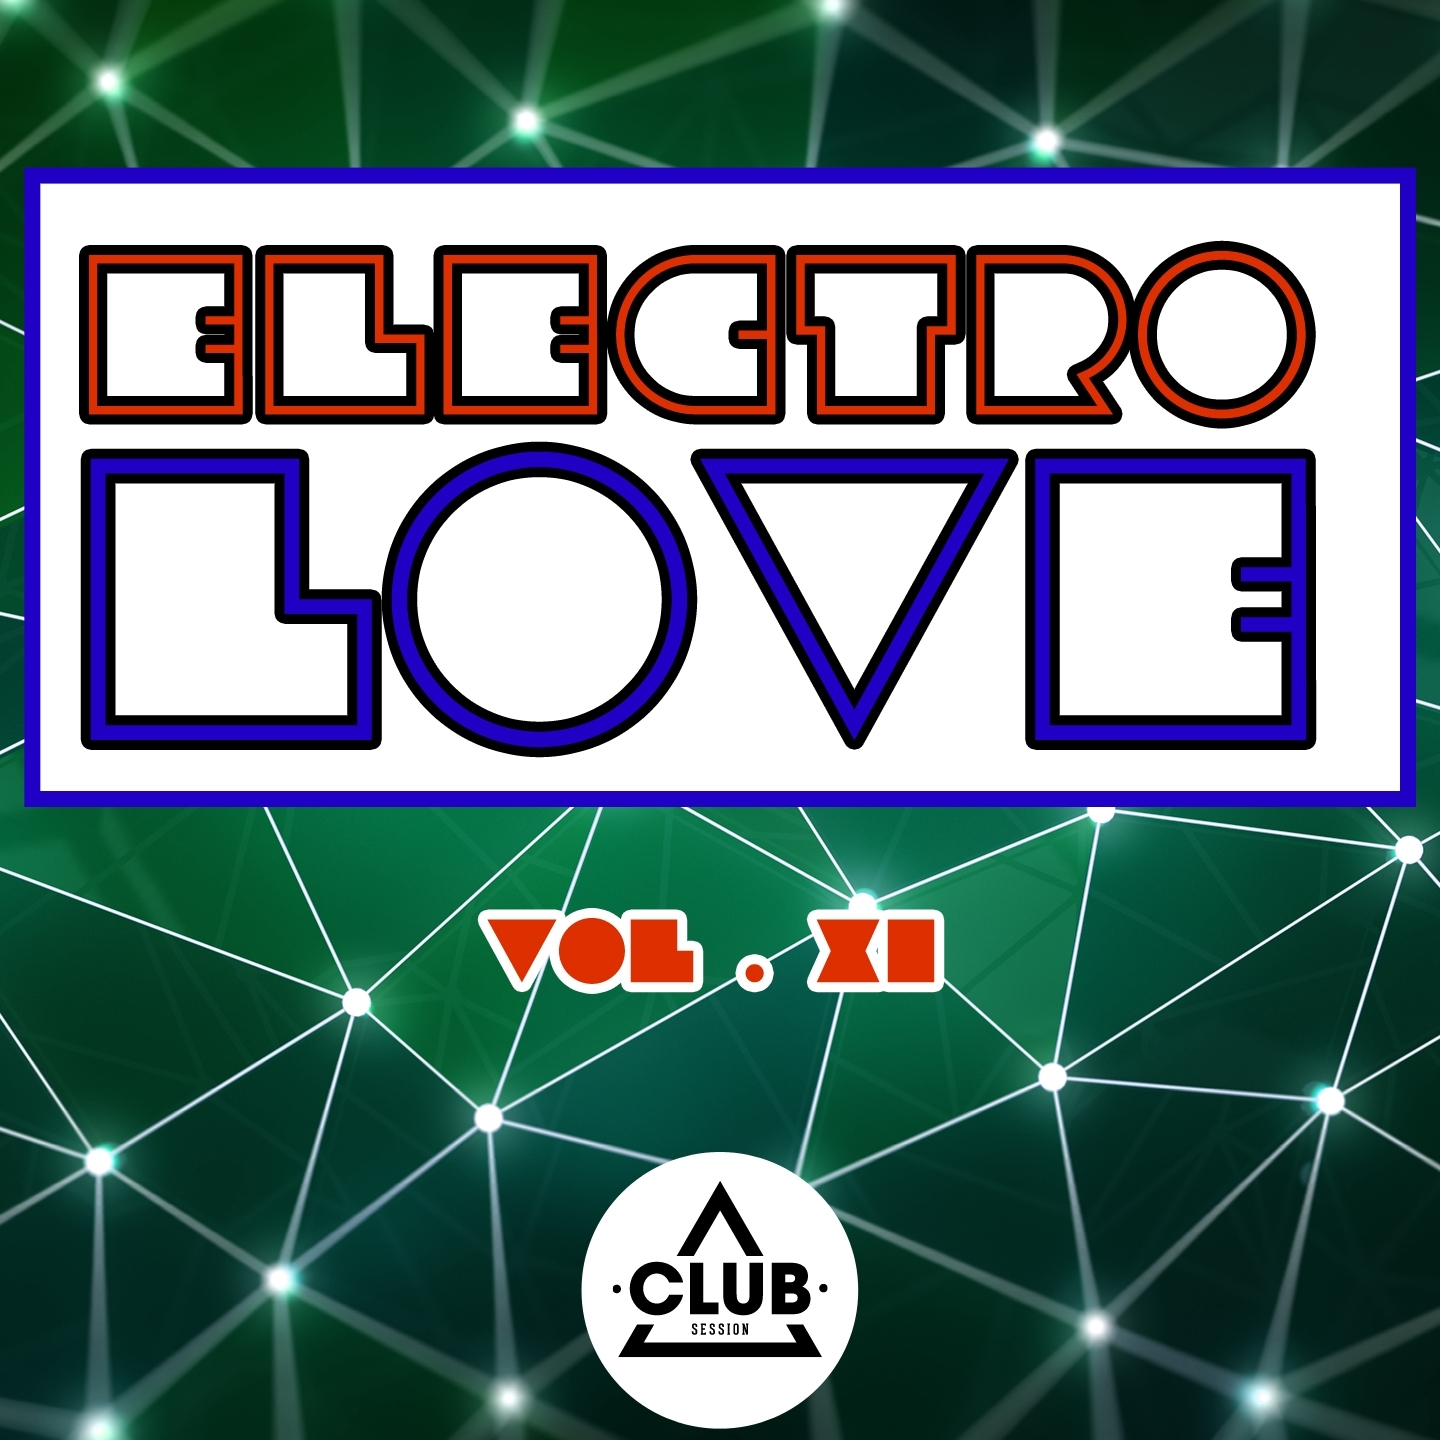 Electro Love, Vol. 11